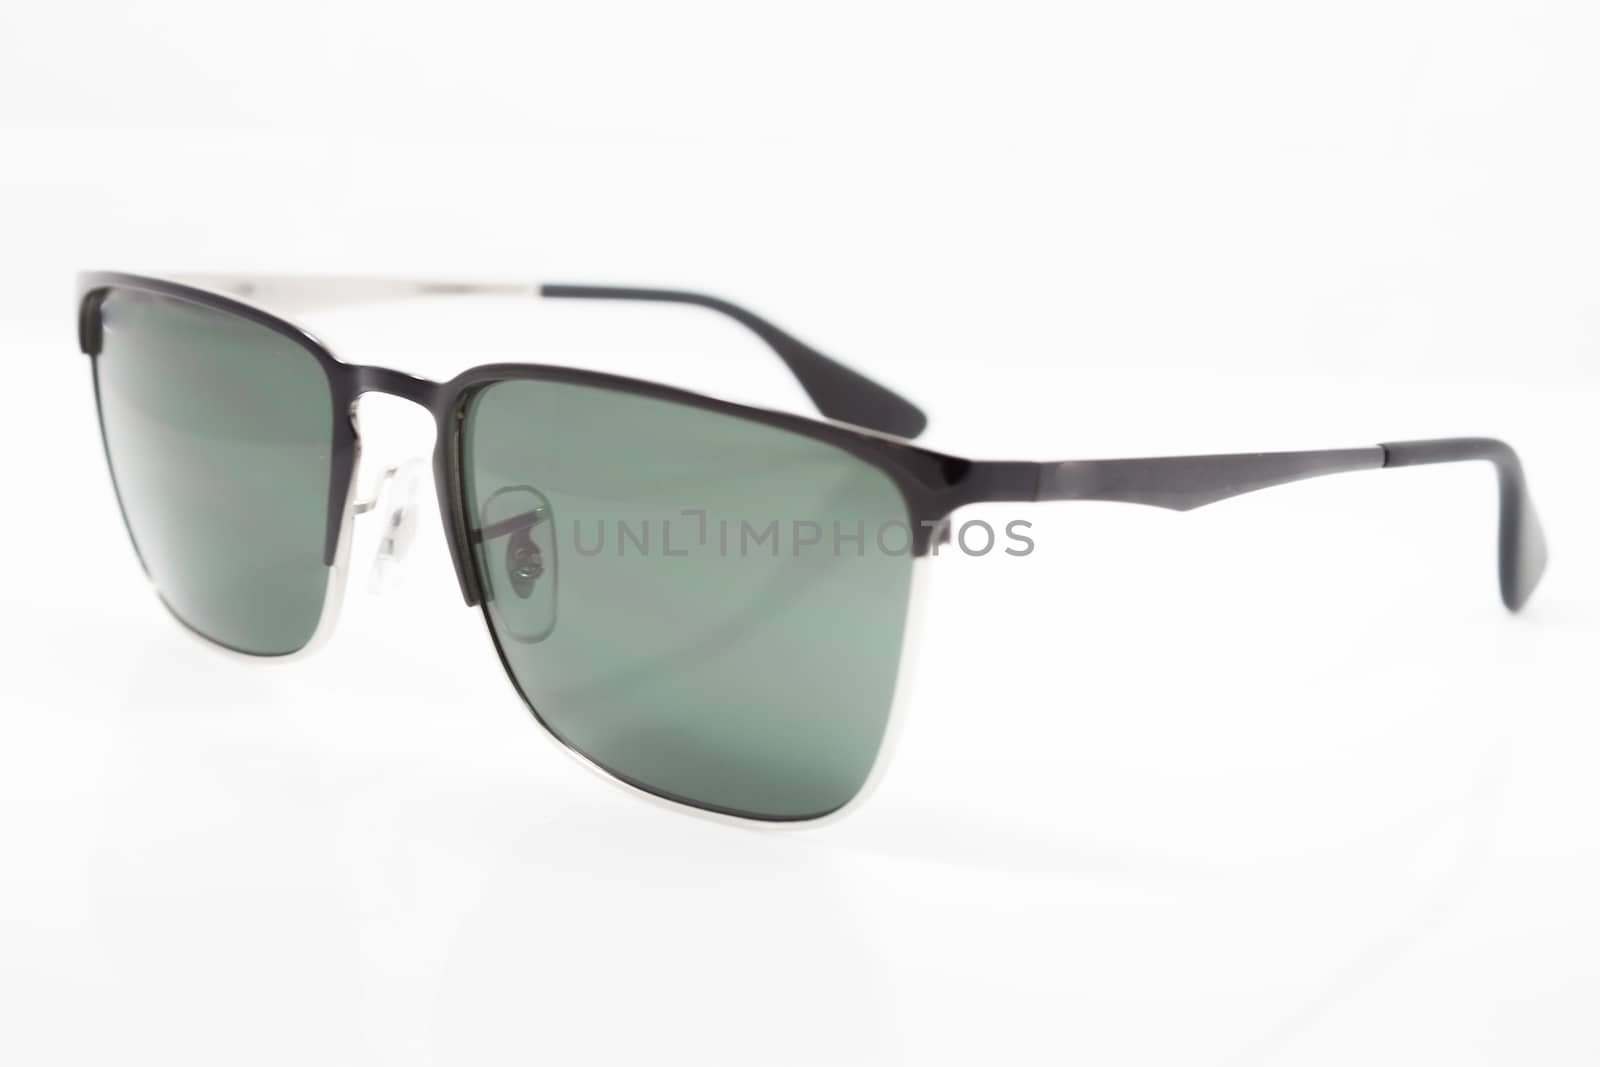 Beautiful sunglasses isolated on white background, stock photo